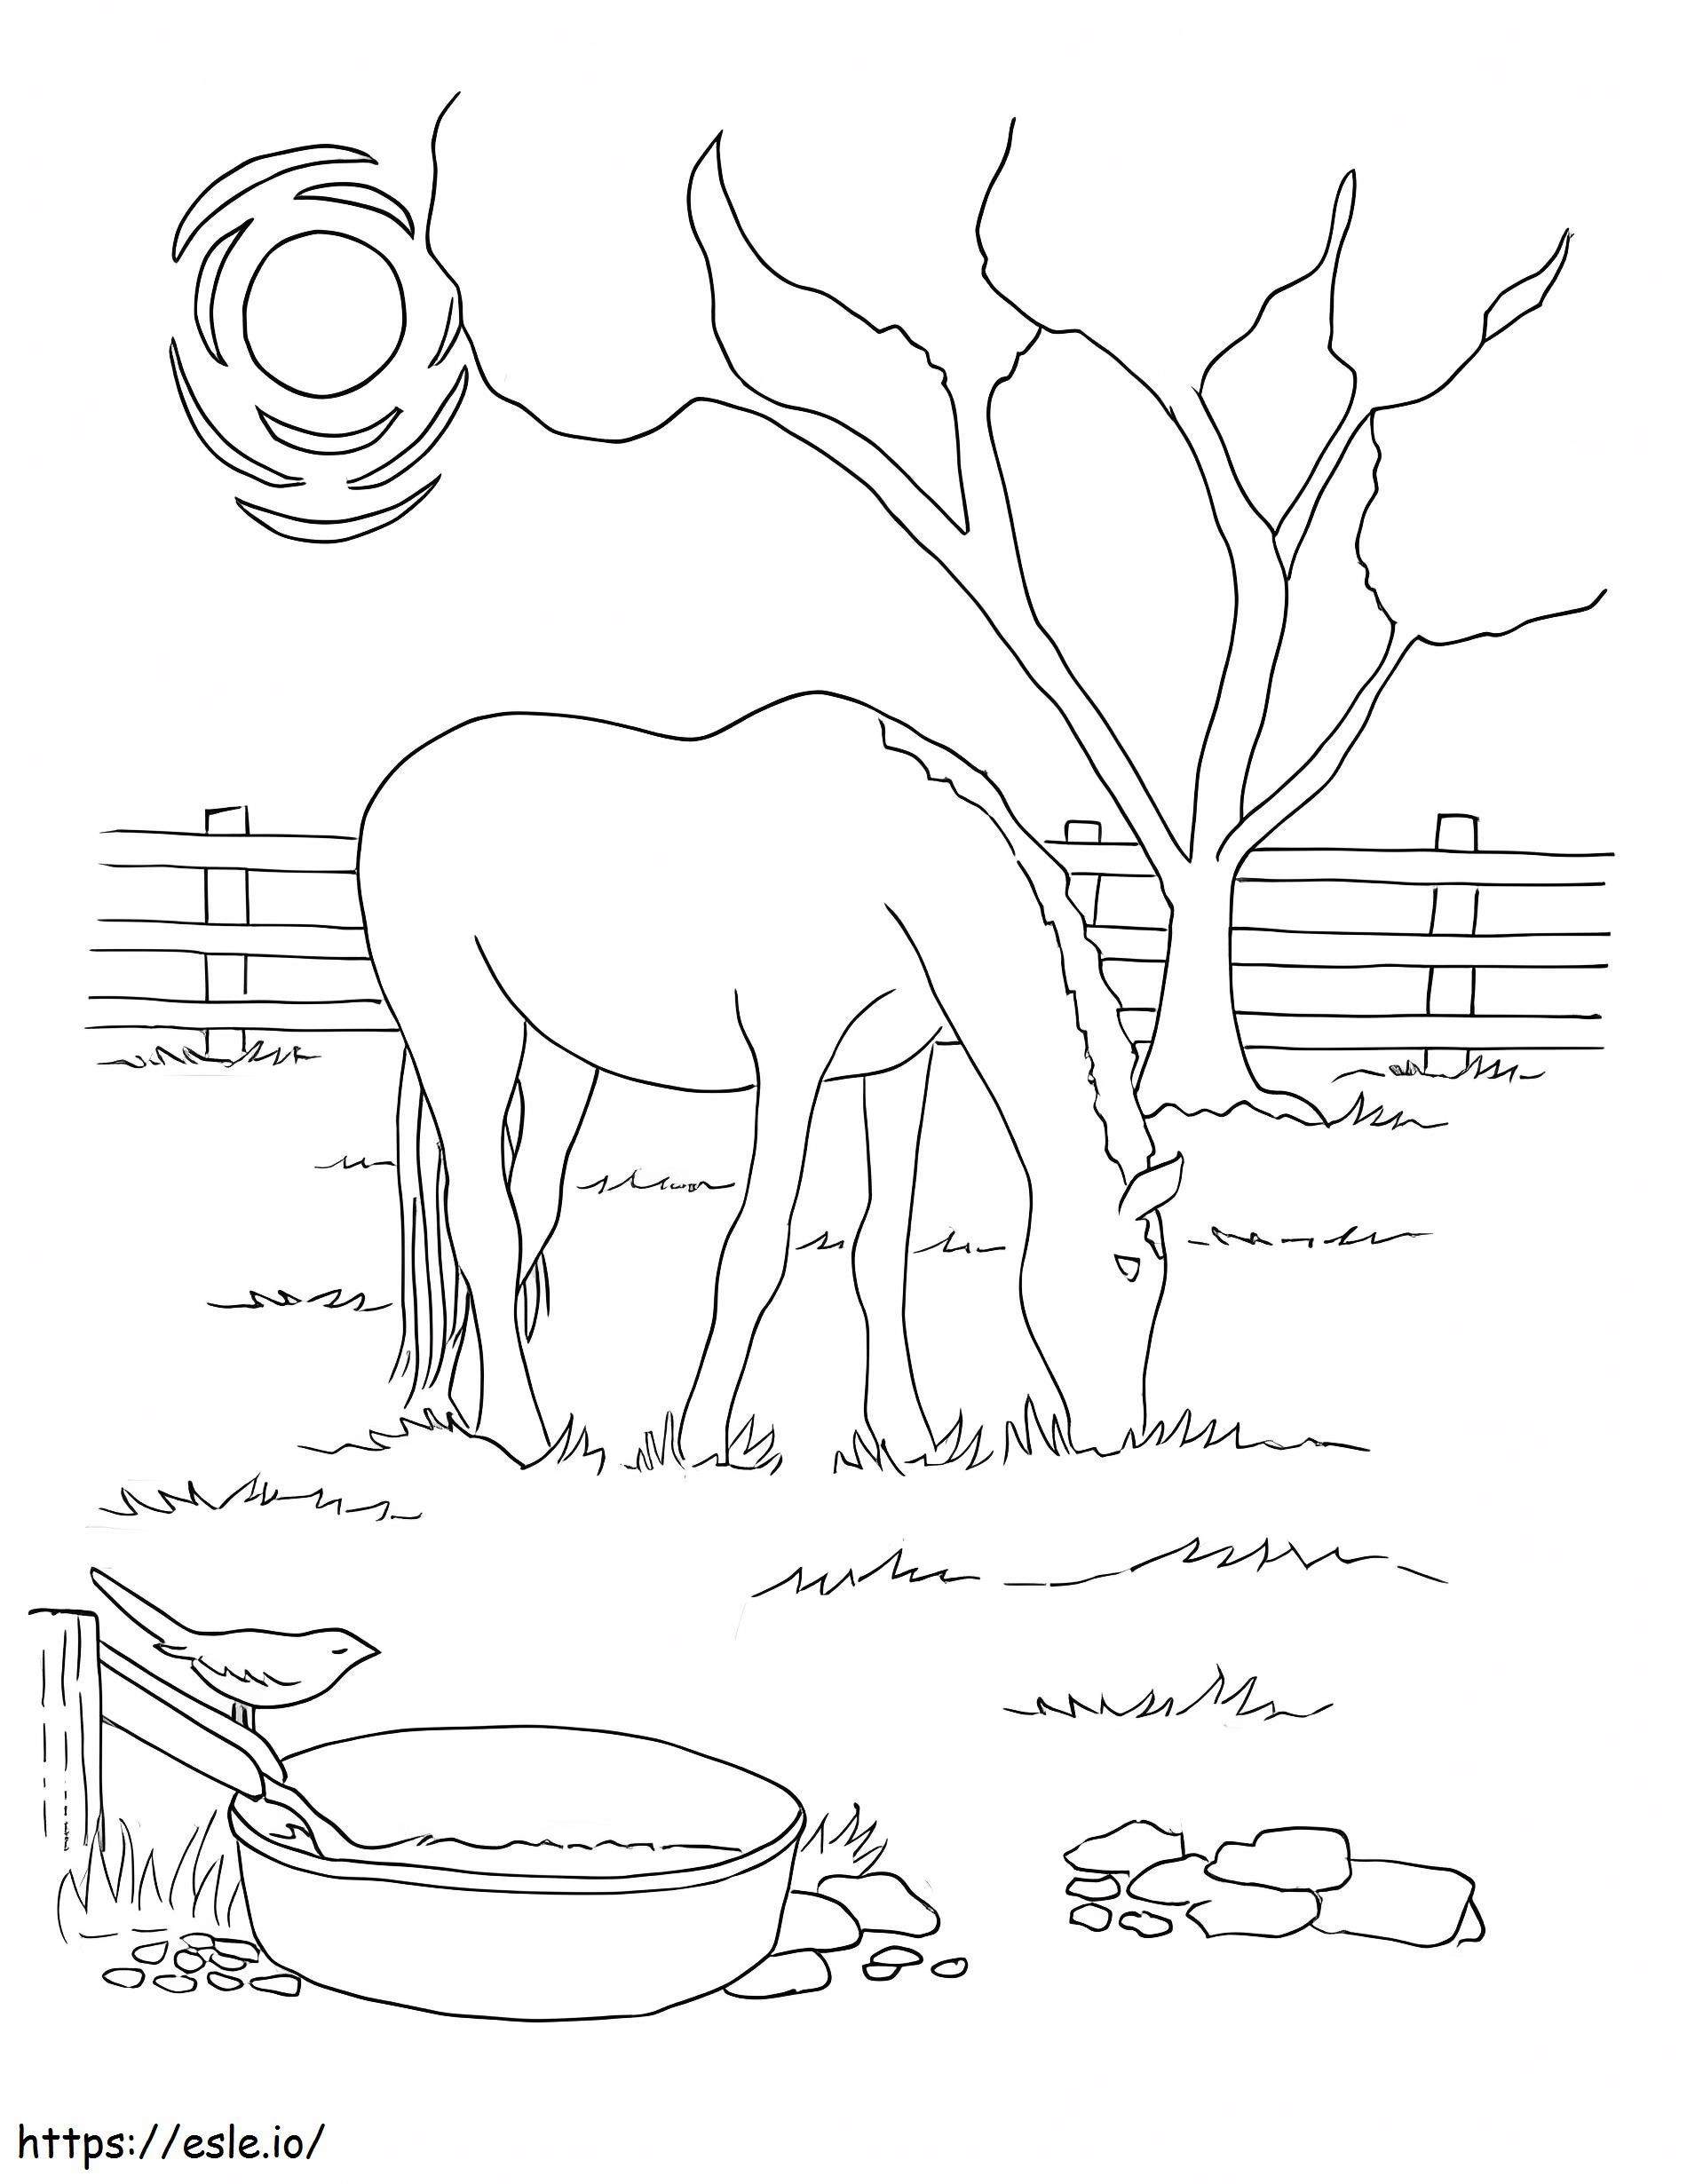 Ló füvet eszik az istállóban kifestő